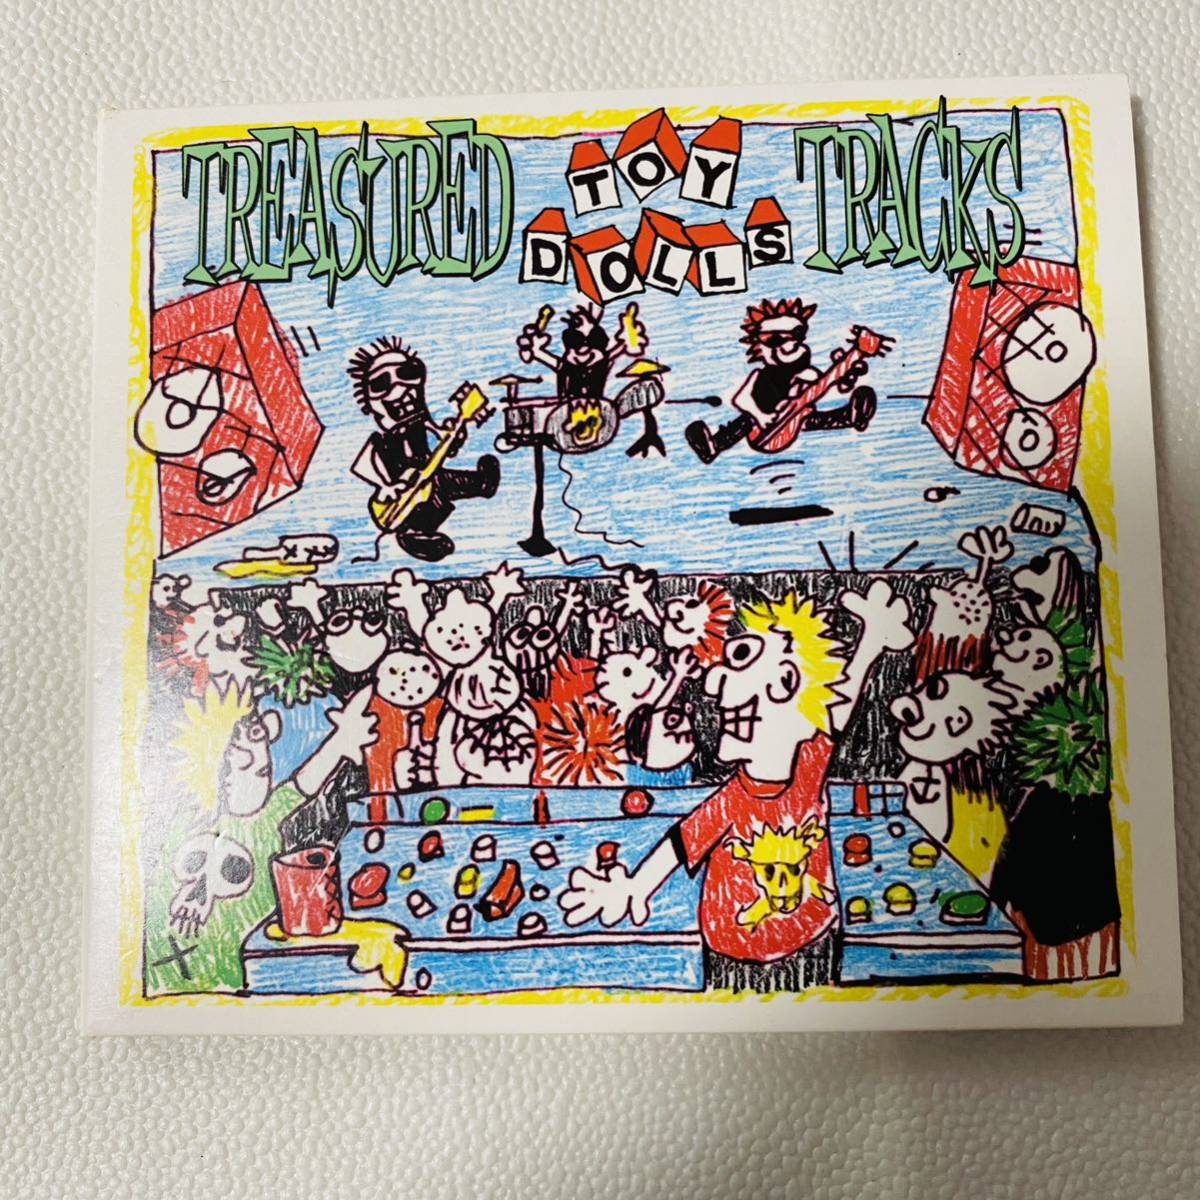 ザ・トイ・ドールズ Treasured Tracks/パンク/ロック/バンド/CD_画像1